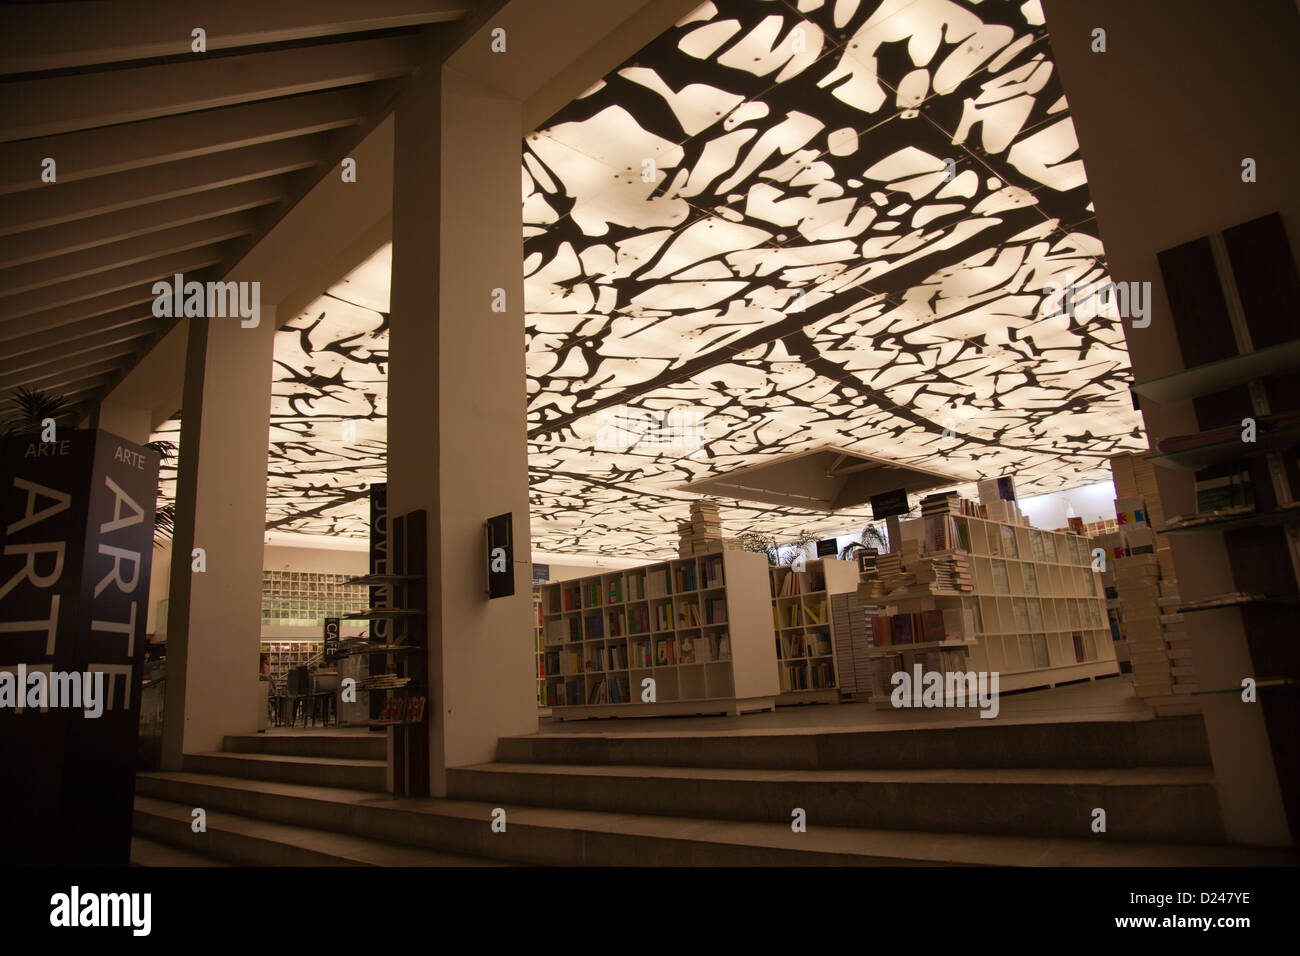 Fondo de Cultura Economica Bookstore in Hipodromo, Condesa - mexico City DF  Stock Photo - Alamy